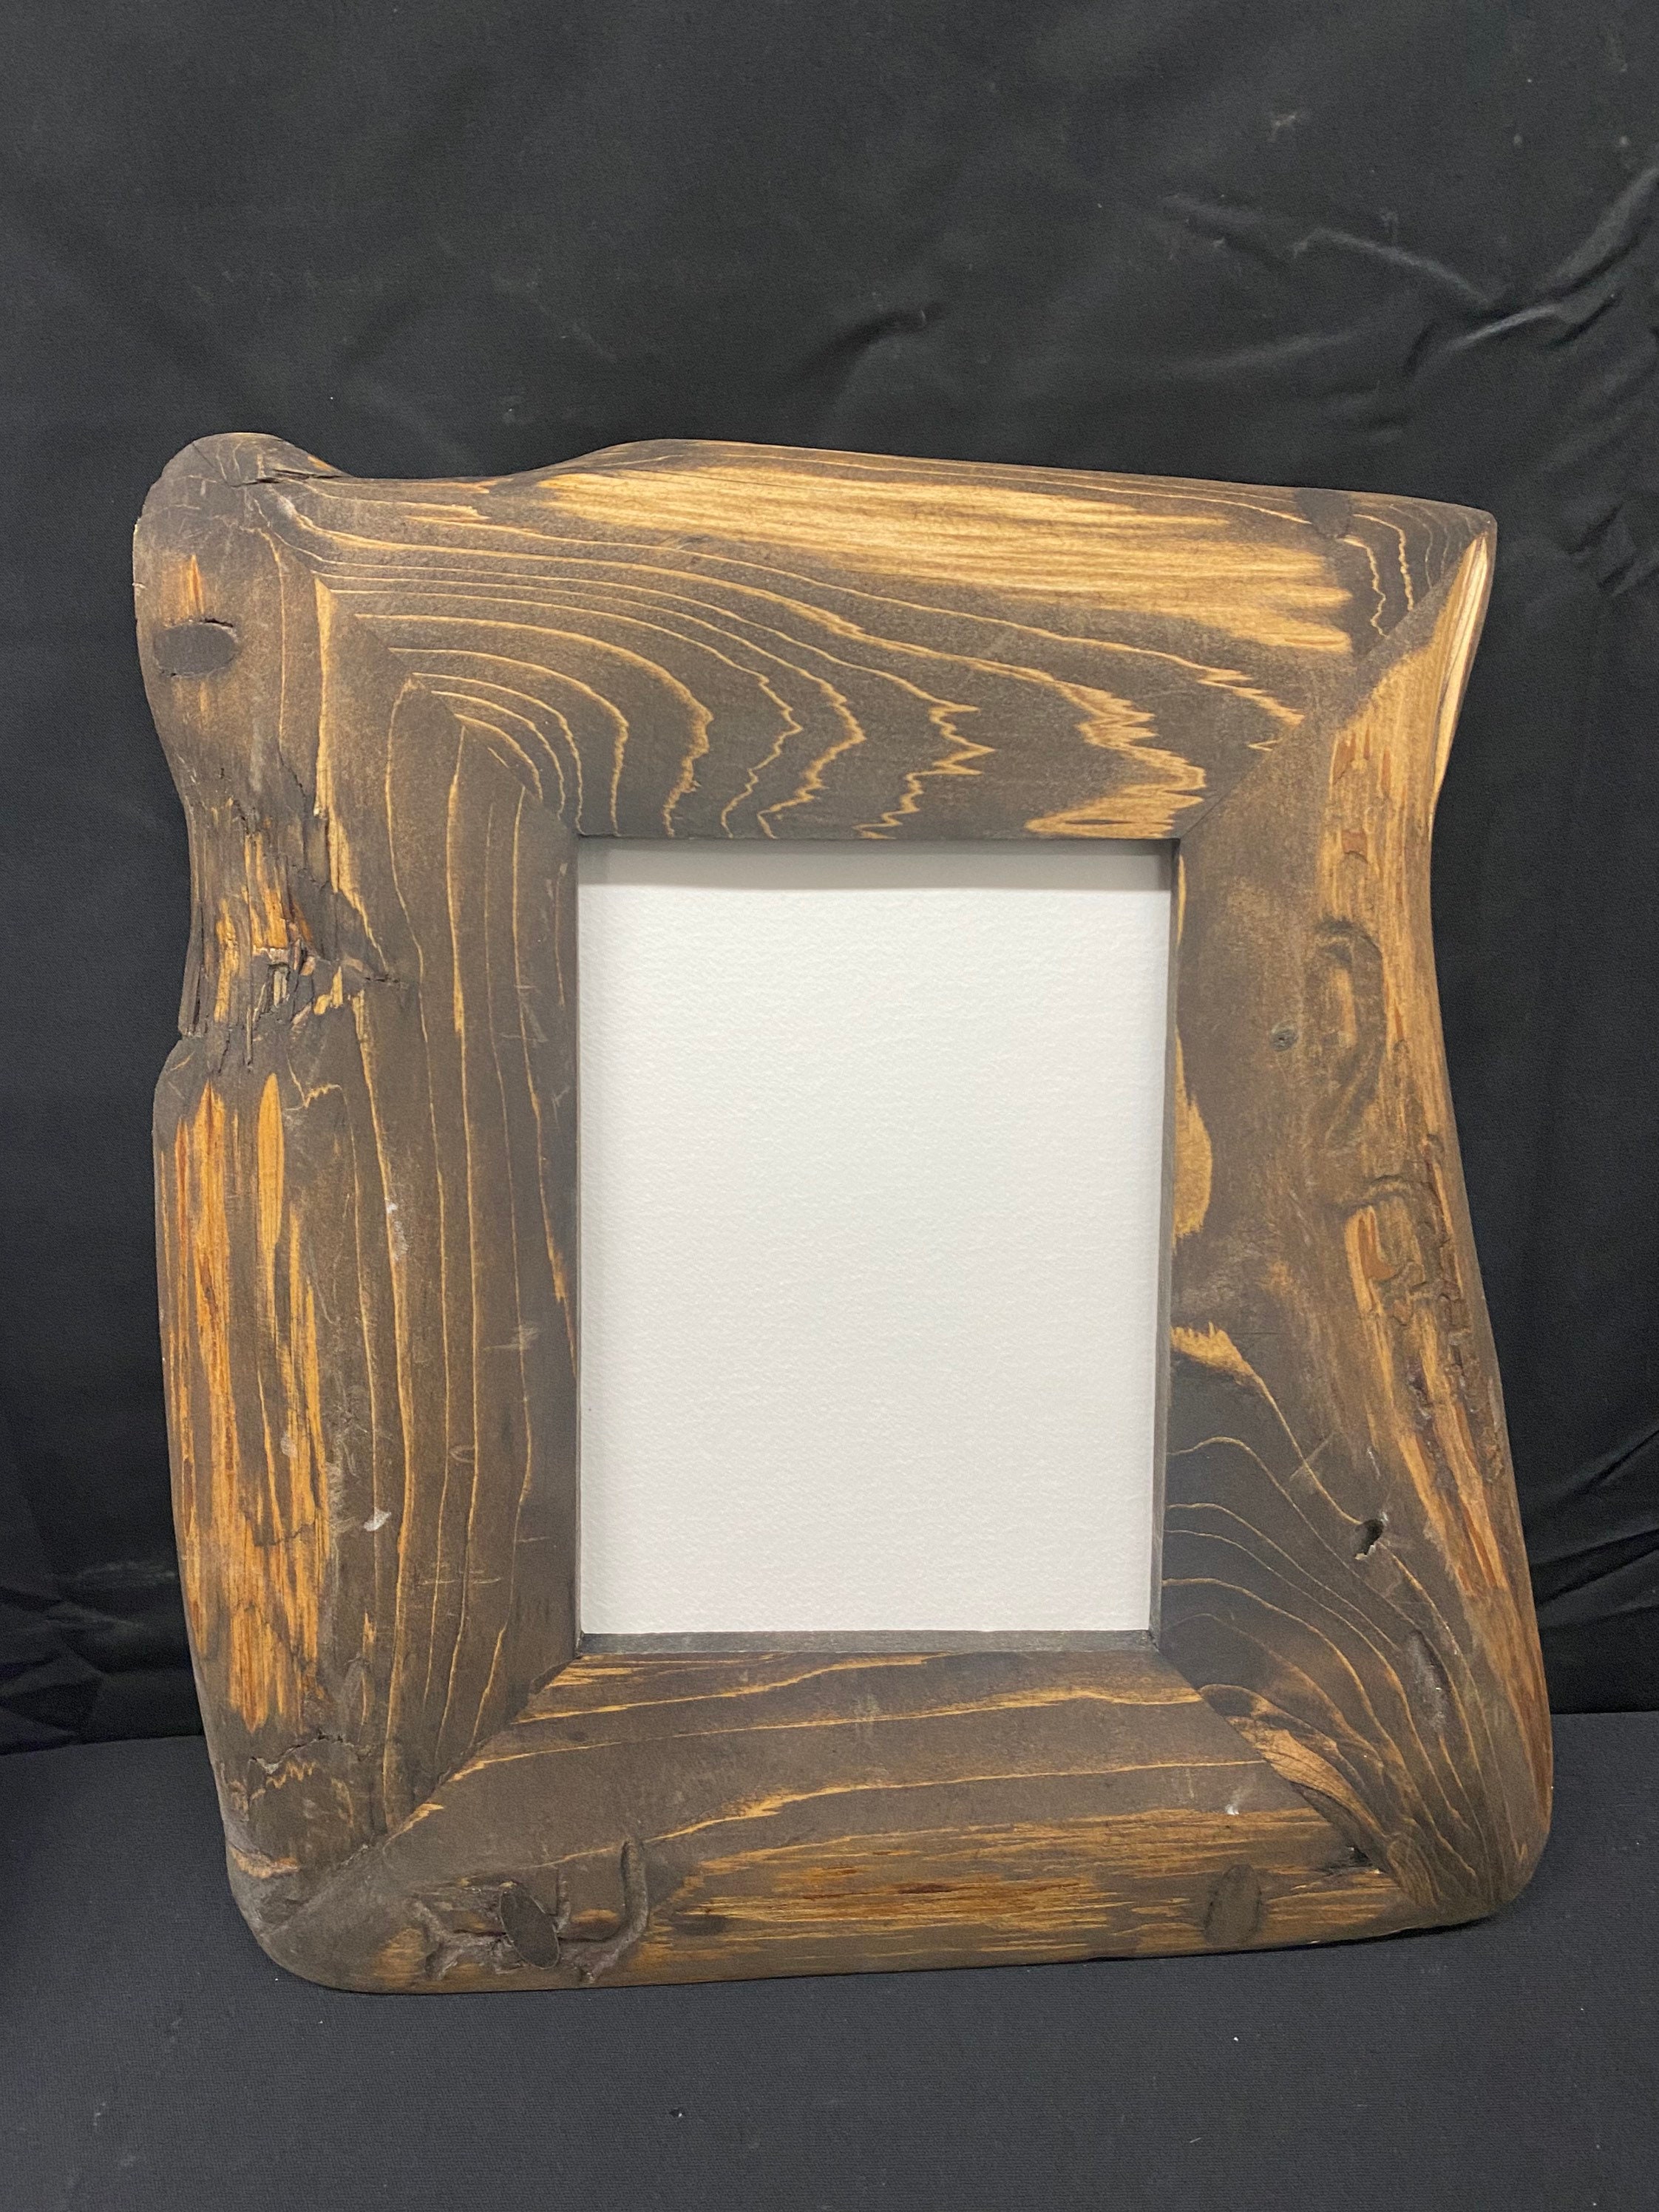 Natural Wood Frame – Sister Golden